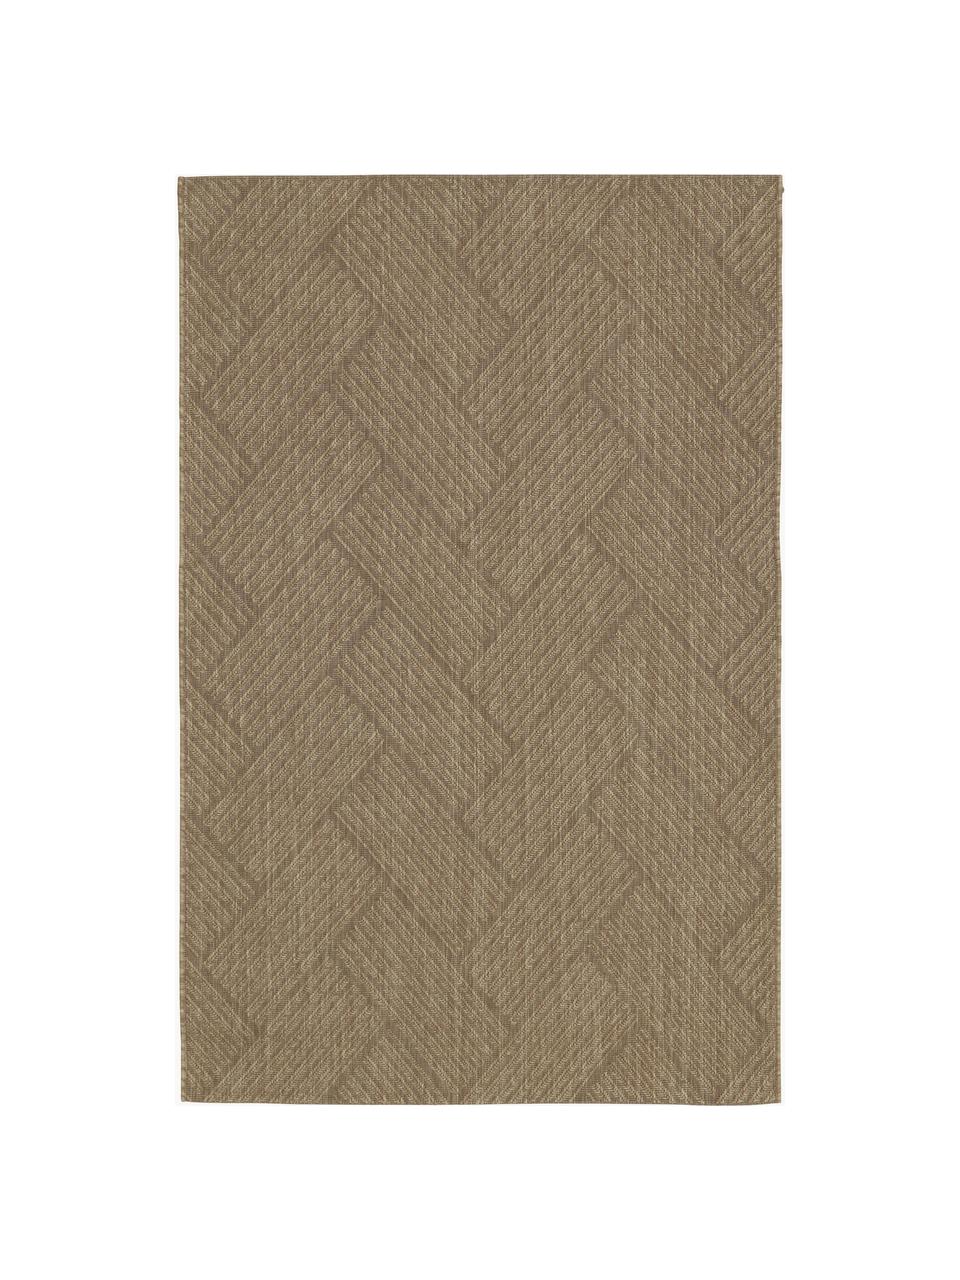 In- & Outdoor-Teppich Ory, 100% Polypropylen, Braun, B 120 x L 180 cm (Größe S)